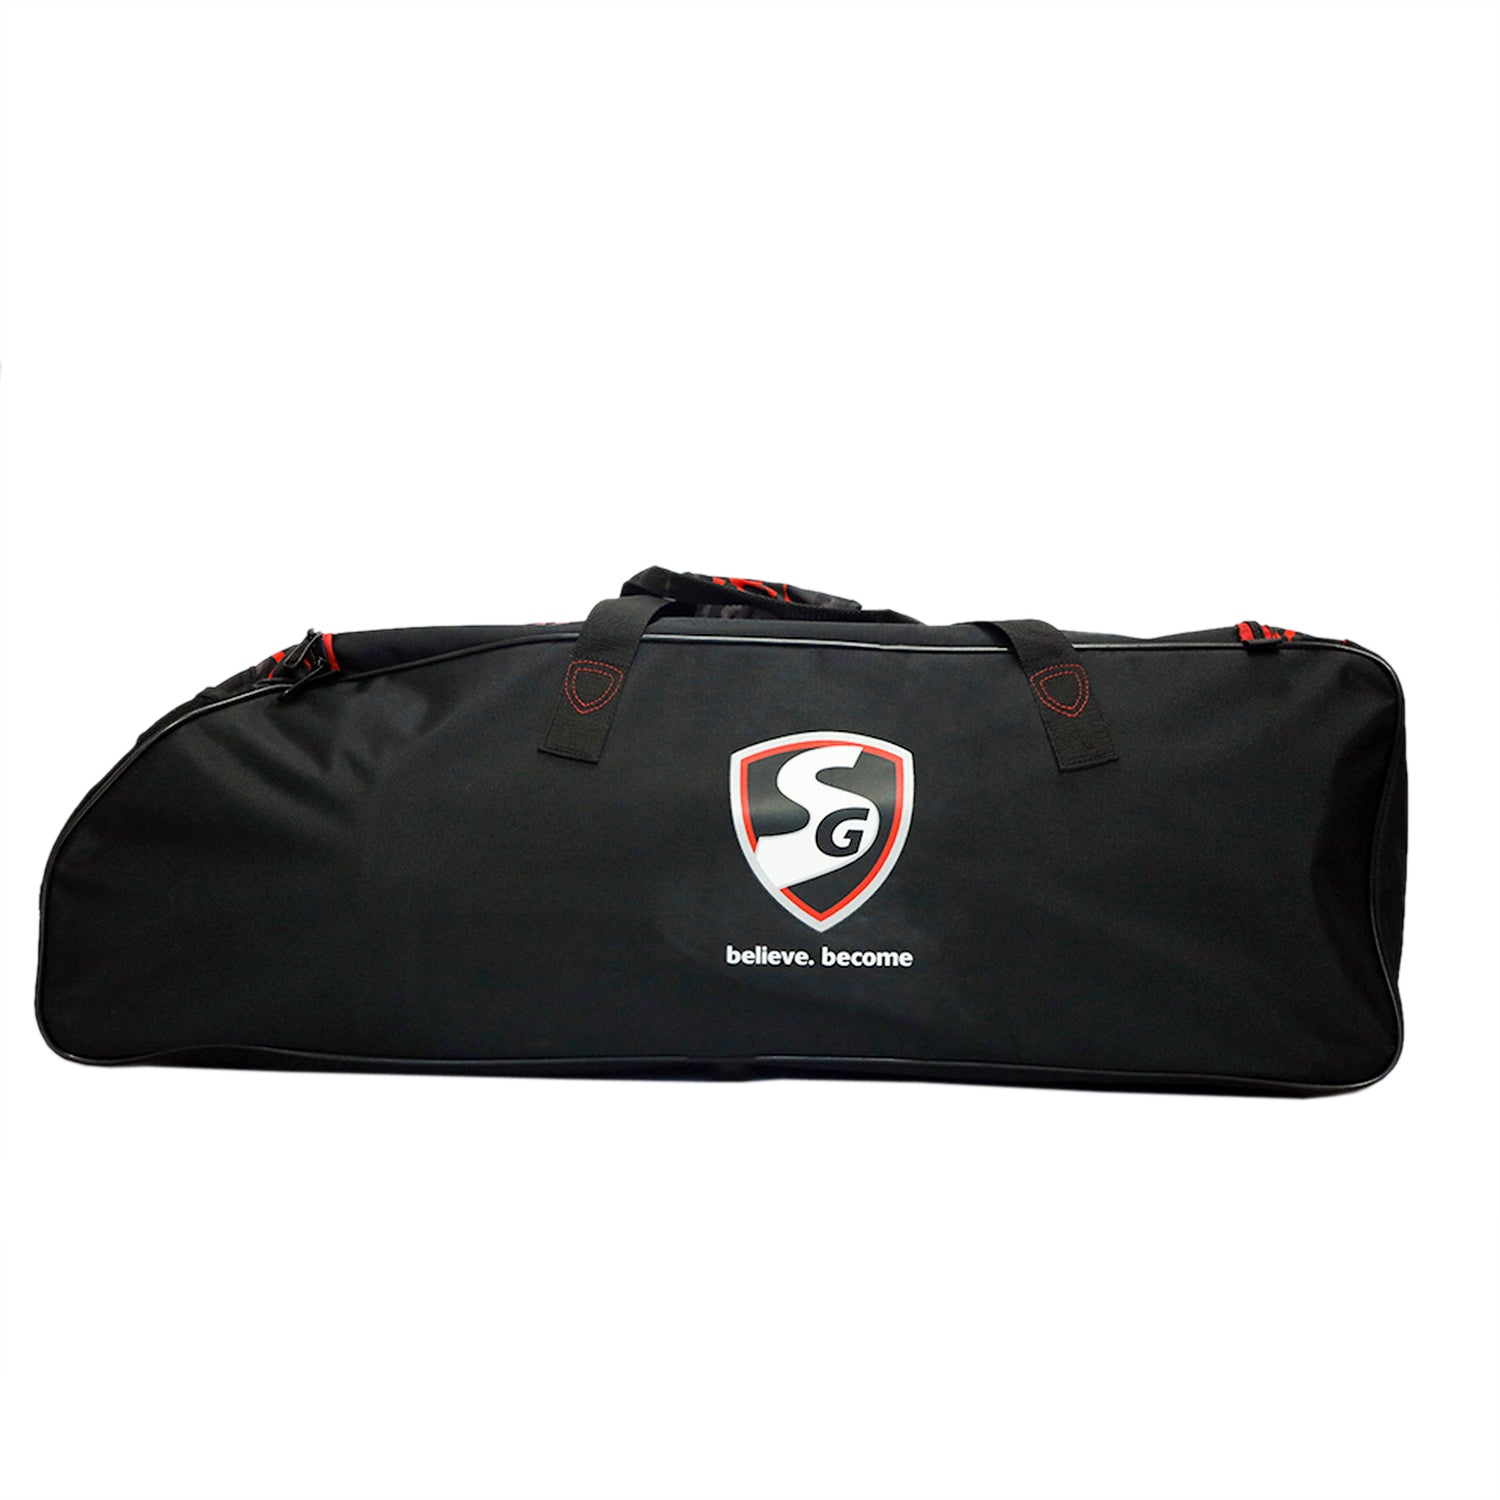 SG Superpak 1.0 Kit Cricket Kit Bag, Large - Best Price online Prokicksports.com